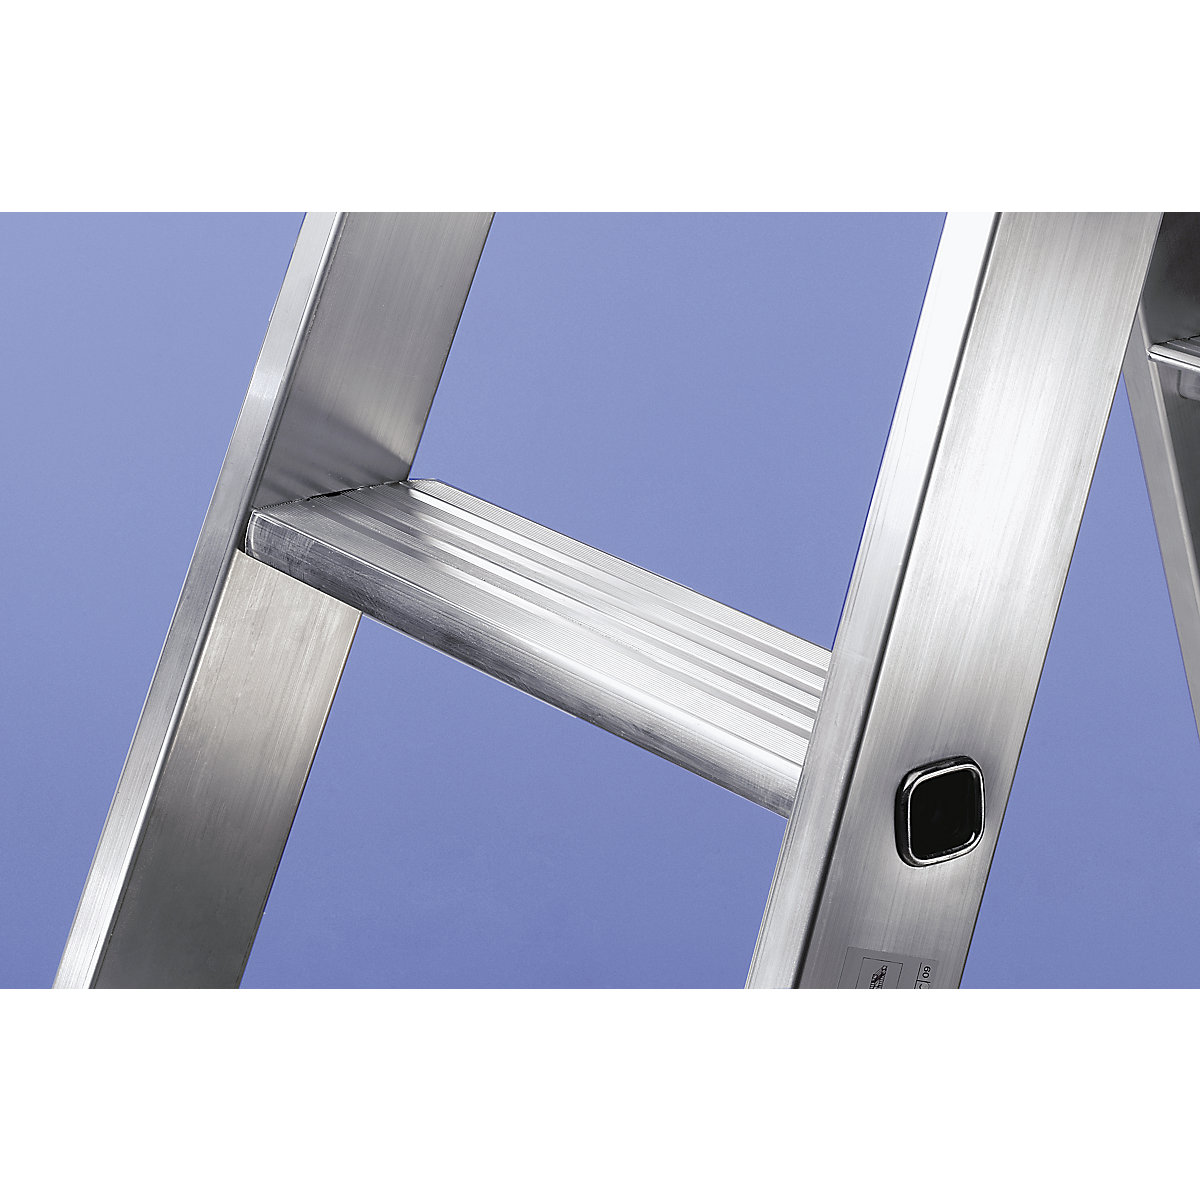 Escalera tipo tijera de peldaños planos, ascenso por ambos lados – MUNK (Imagen del producto 16)-15